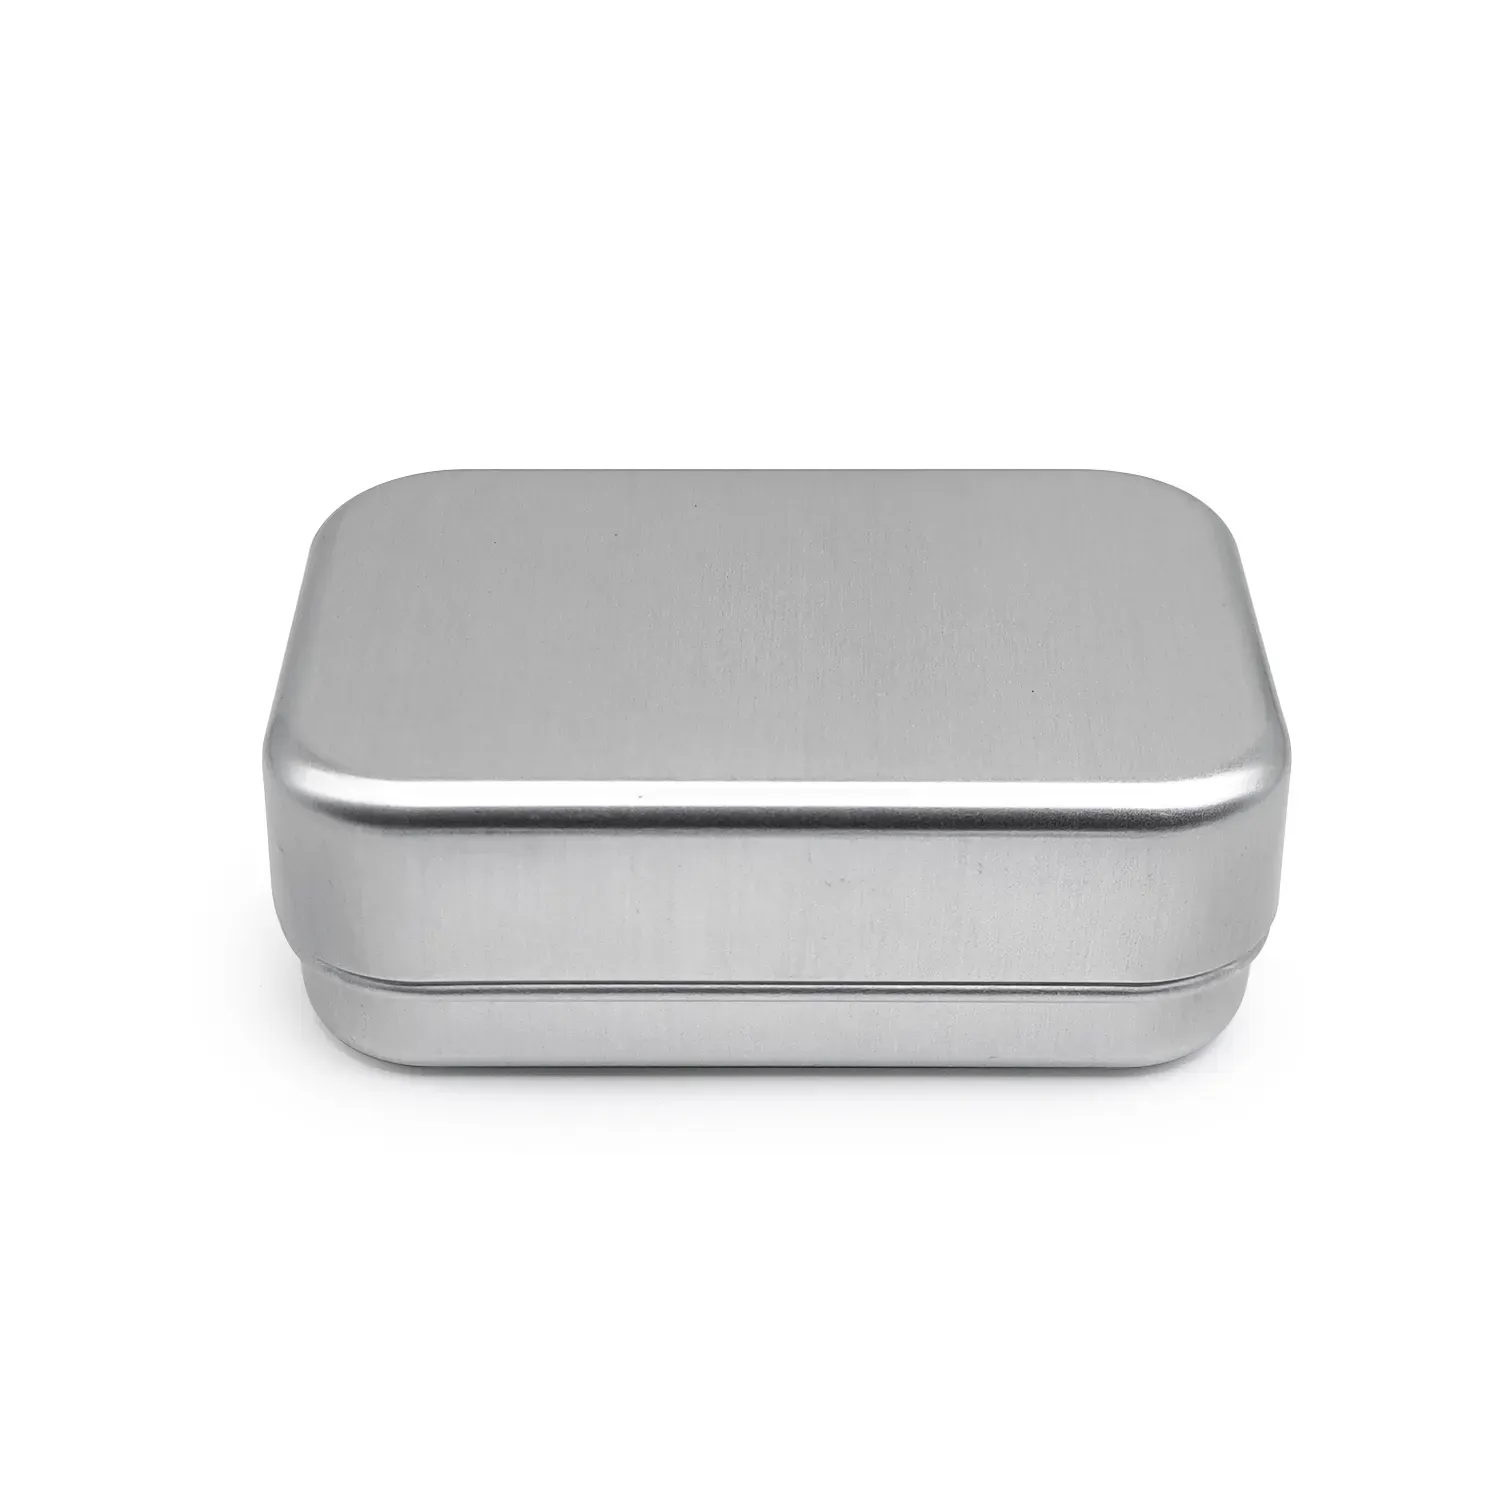 102*69*36mm aluminium tin metal soap facial cream storage box container